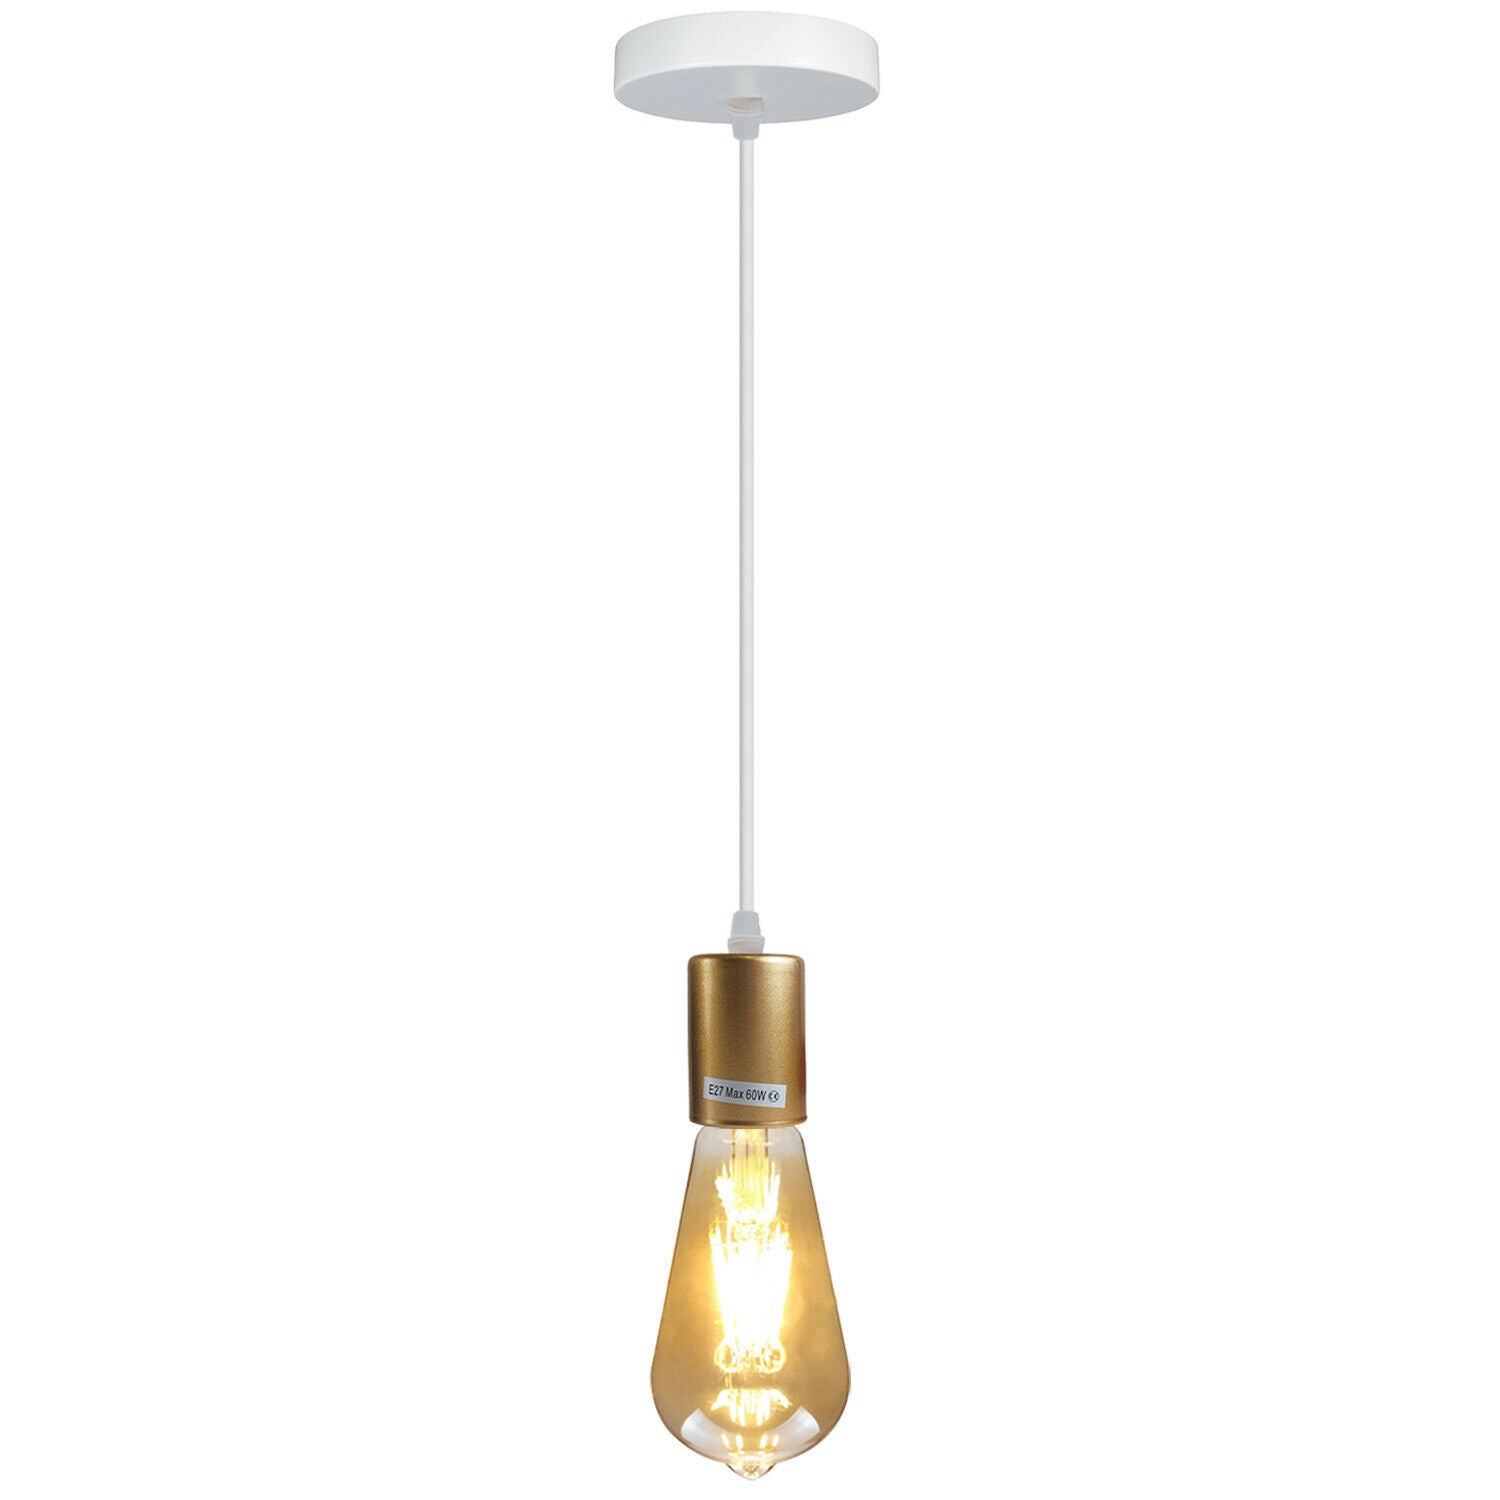 Gold E27 Ceiling Light Fitting Industrial Pendant Lamp Bulb Holder~1673 - LEDSone UK Ltd